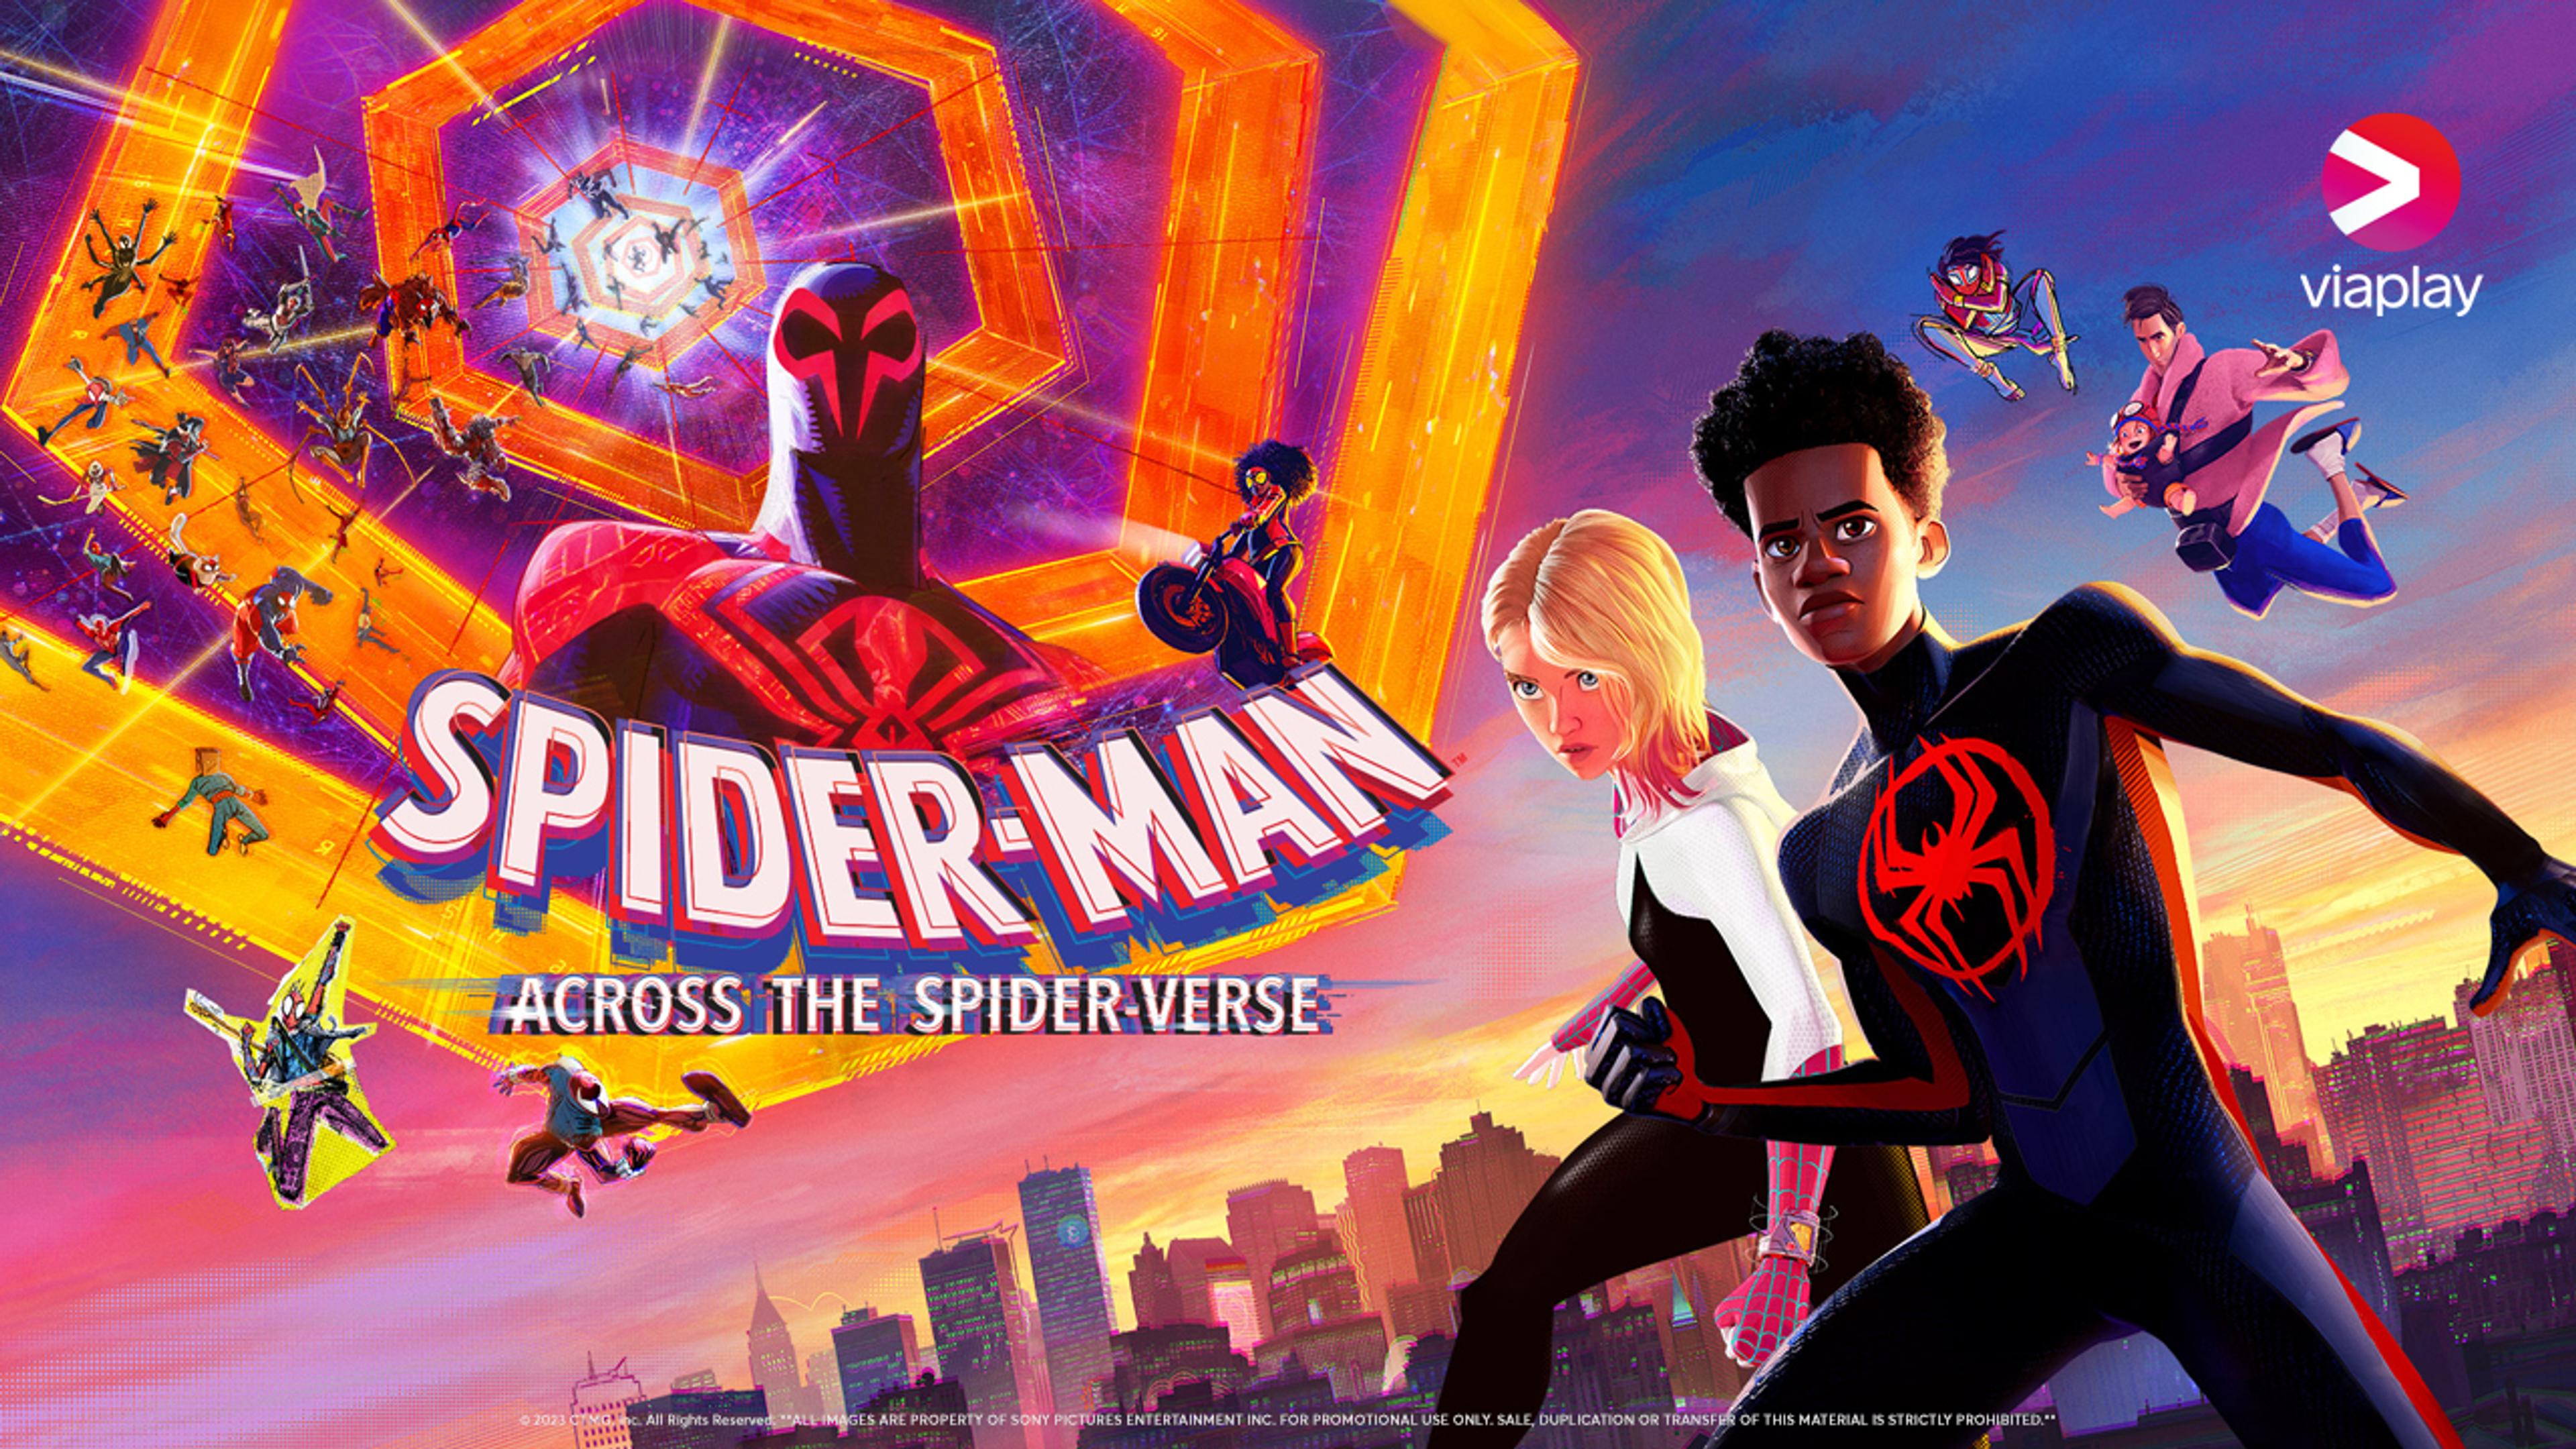 Animerte versjon av Miles Morales som Spider-man står foran andre figurer fra filmen.